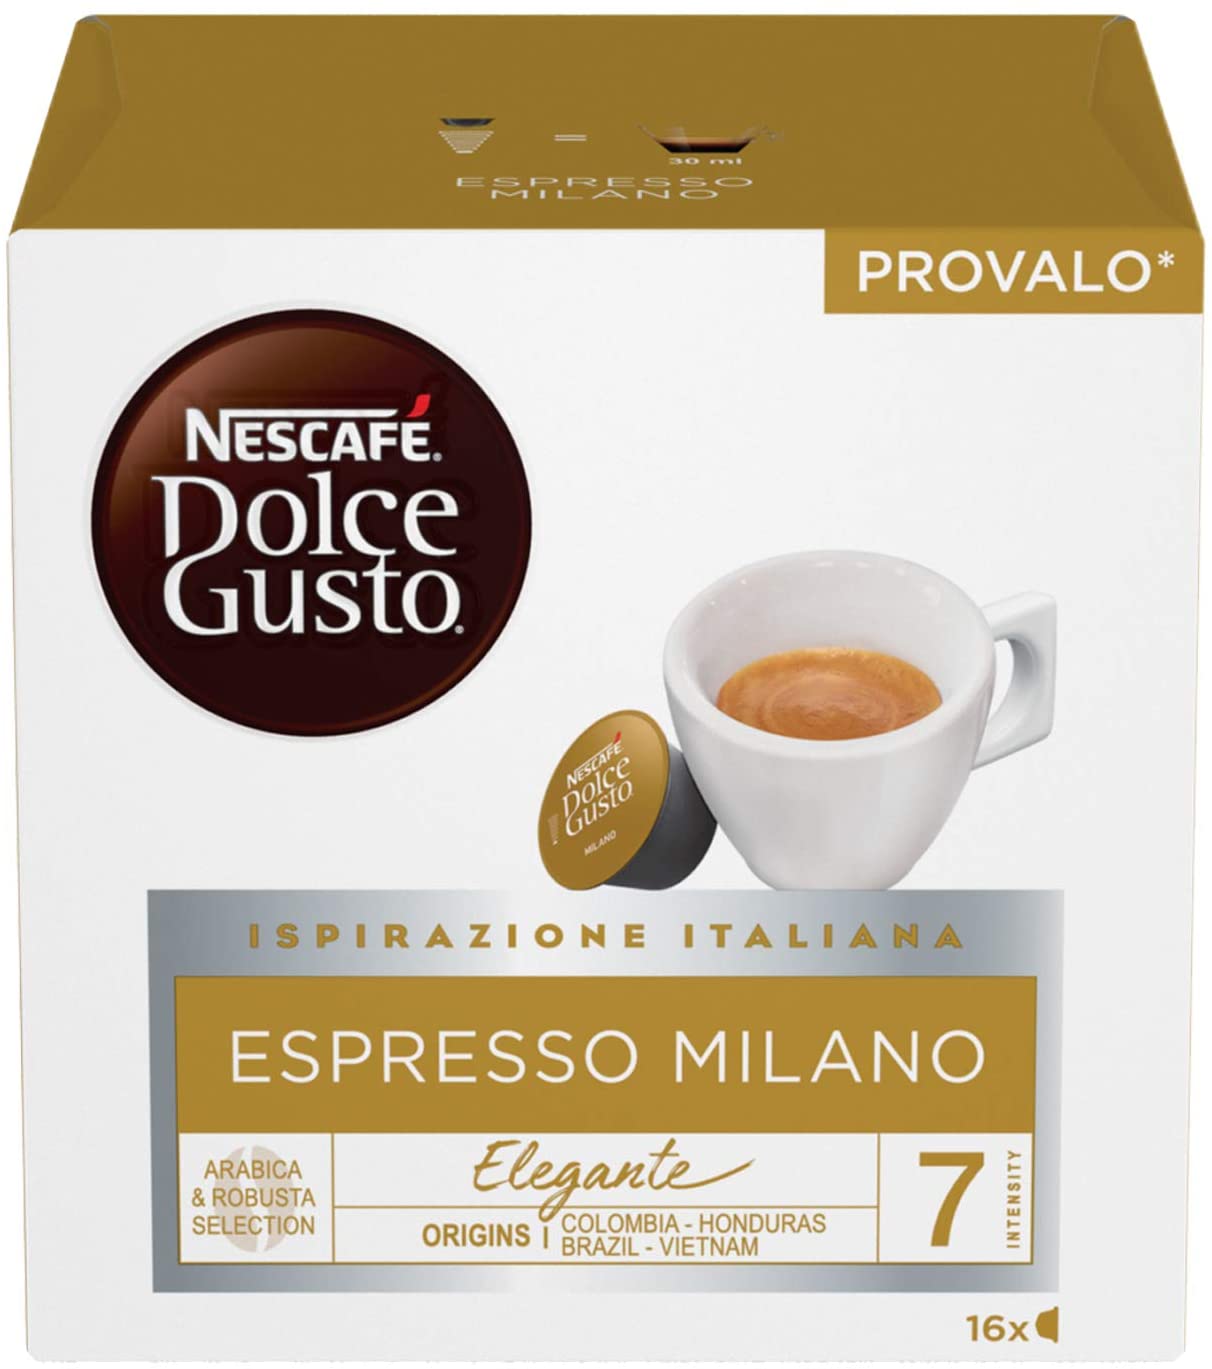 Nescafé Dolce Gusto Espresso Milano Caffè, 6 Confezioni da 16 Capsule (96 Capsule)